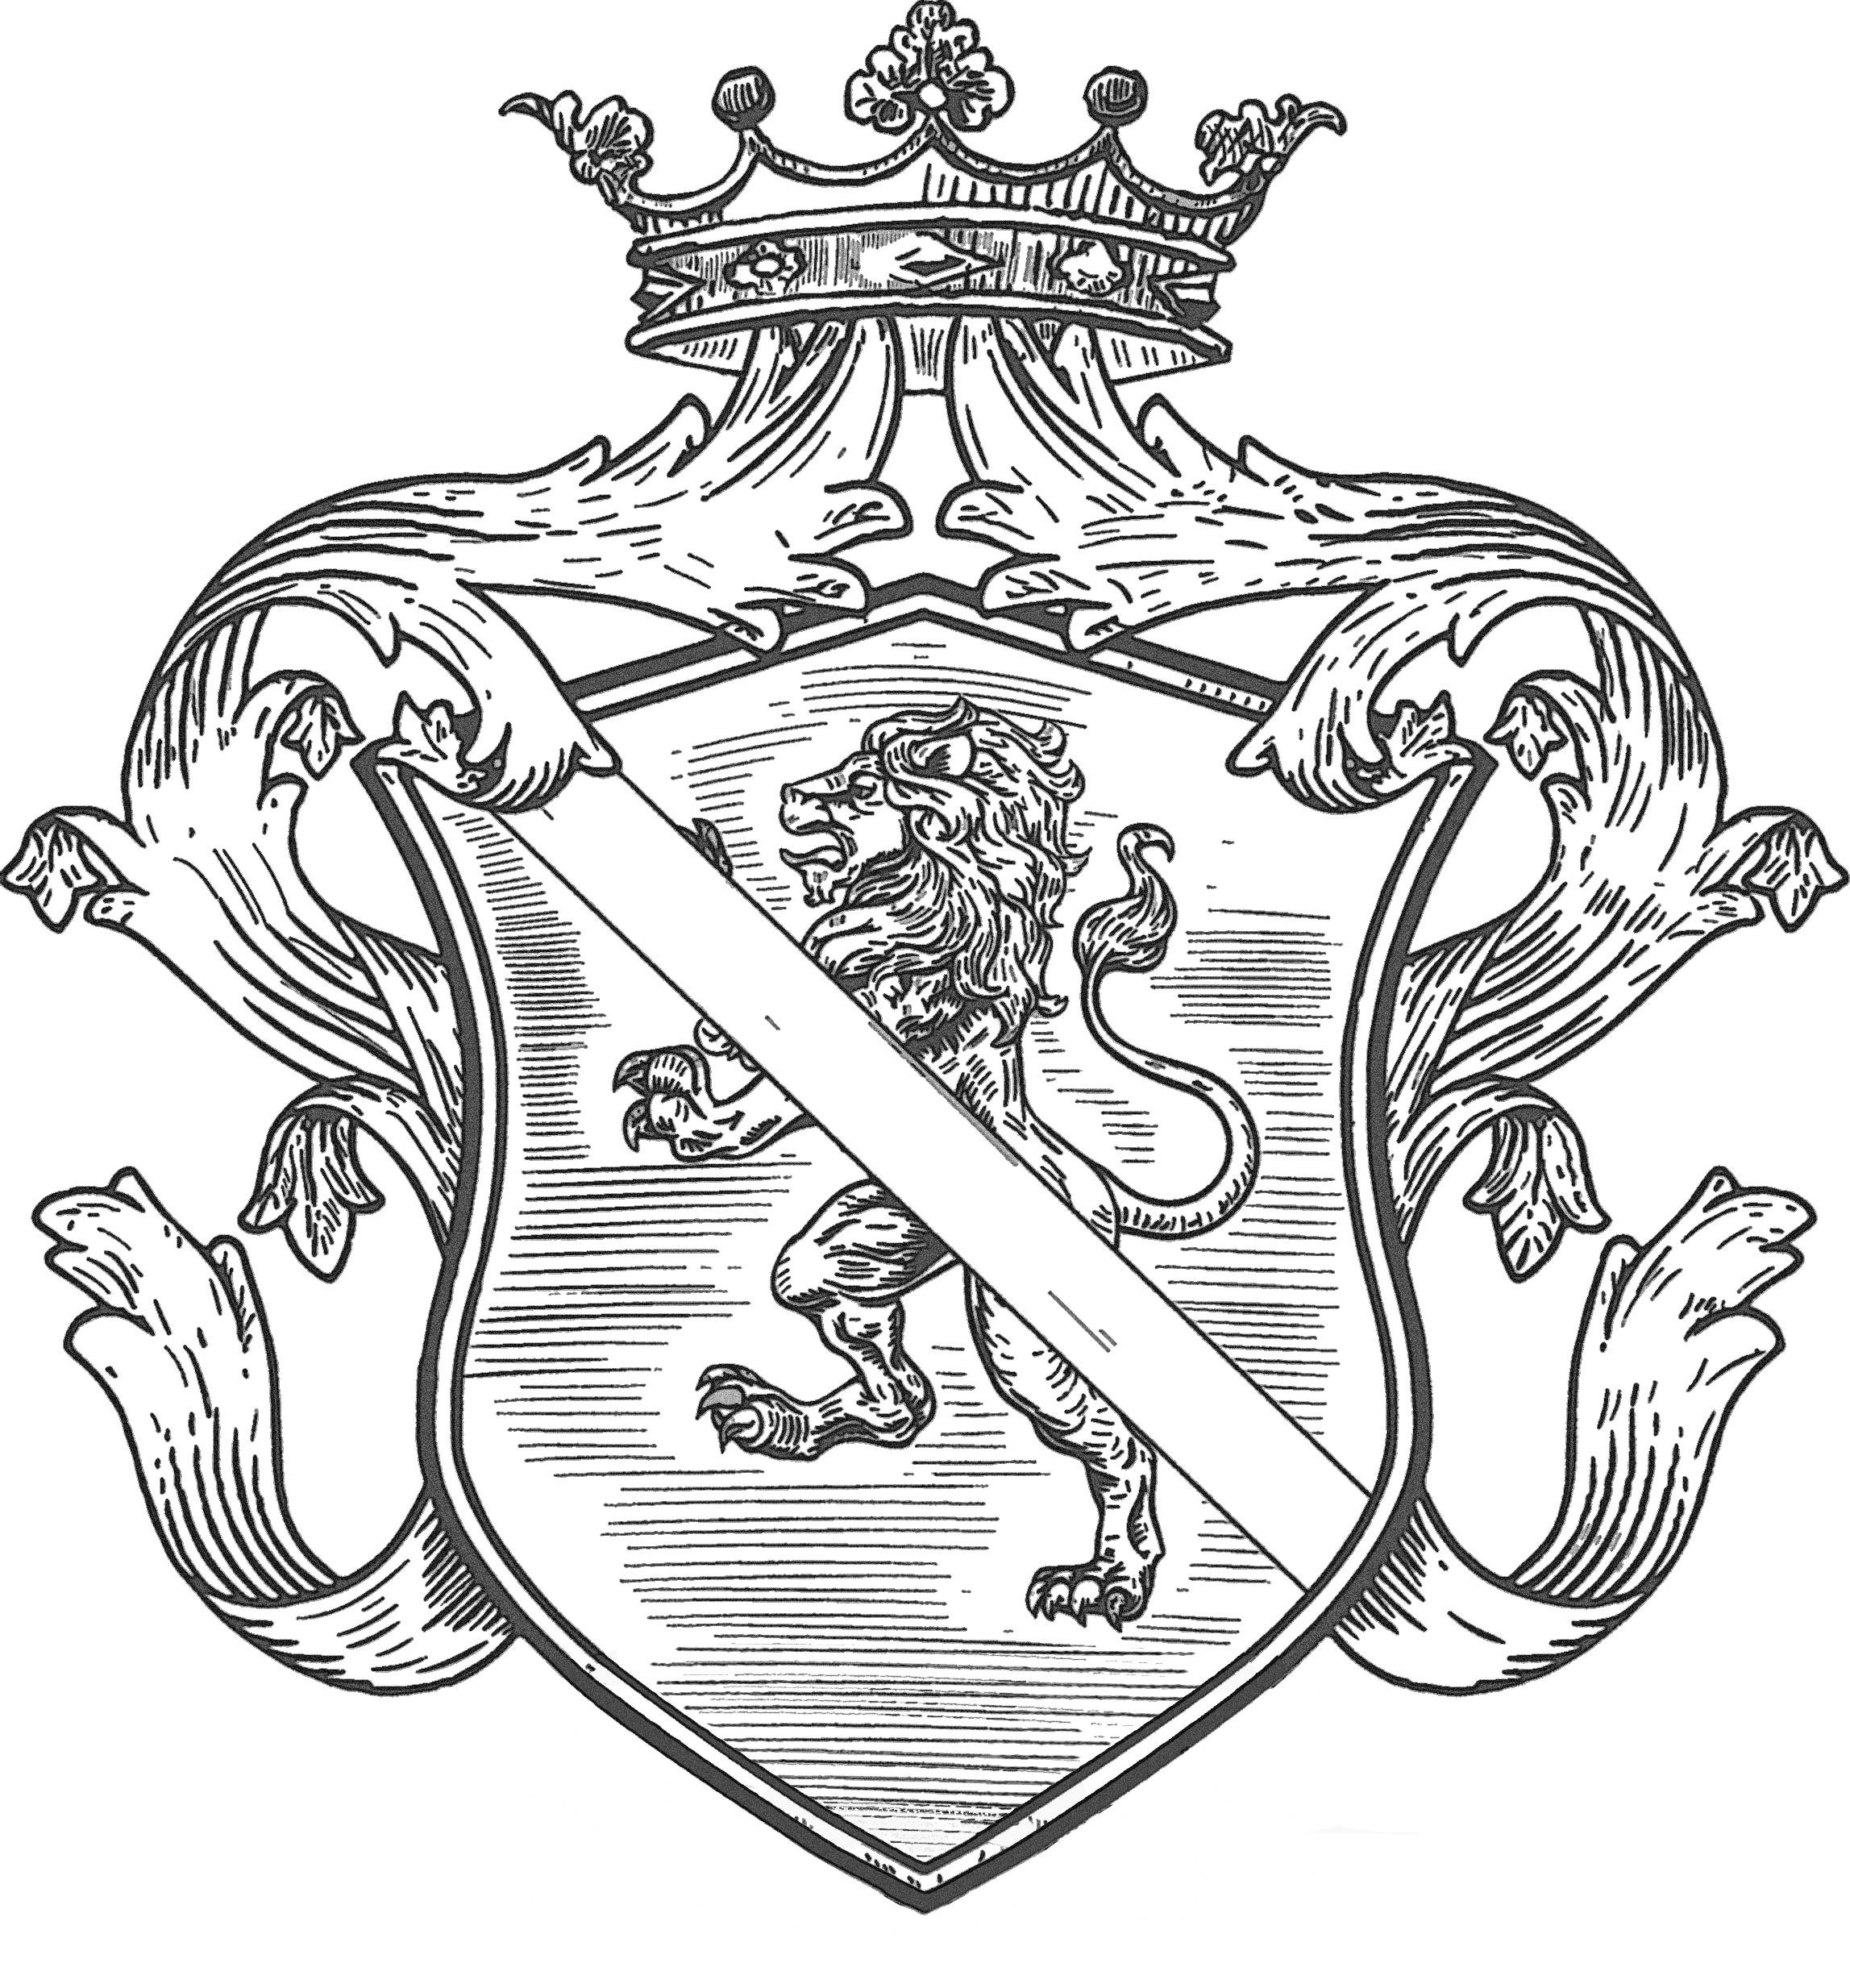 File:Stemma Famiglia Delle Piane Medievale.jpg - Wikipedia